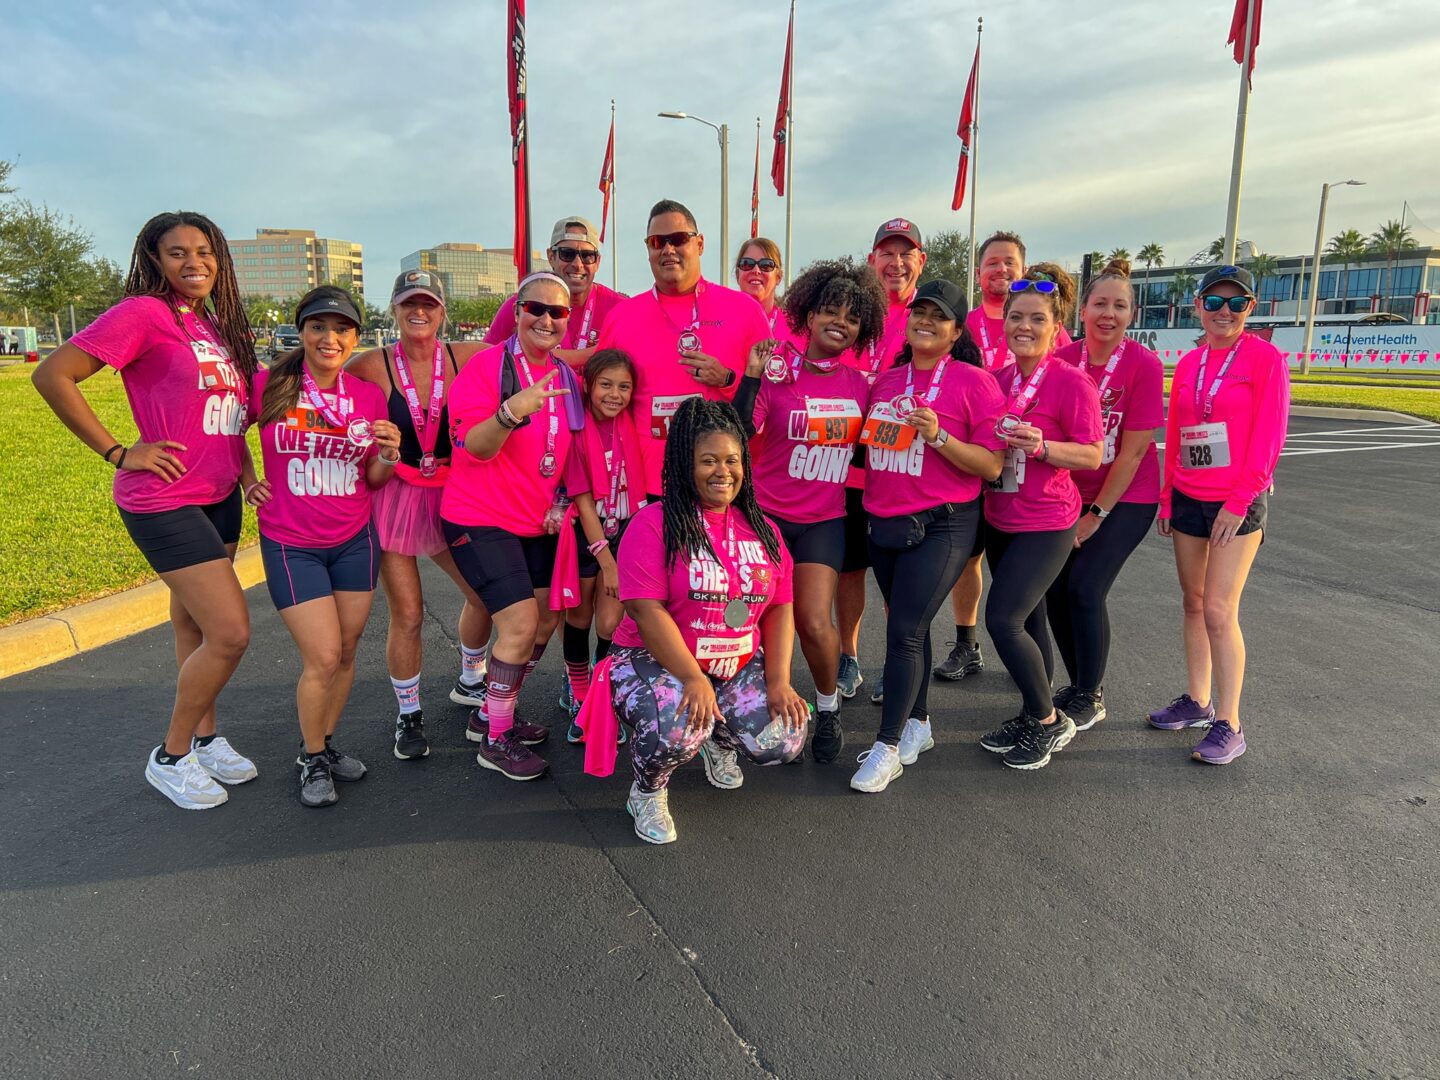 Interstate Apparel Junior's Team Pink Breast Cancer Ribbon V395